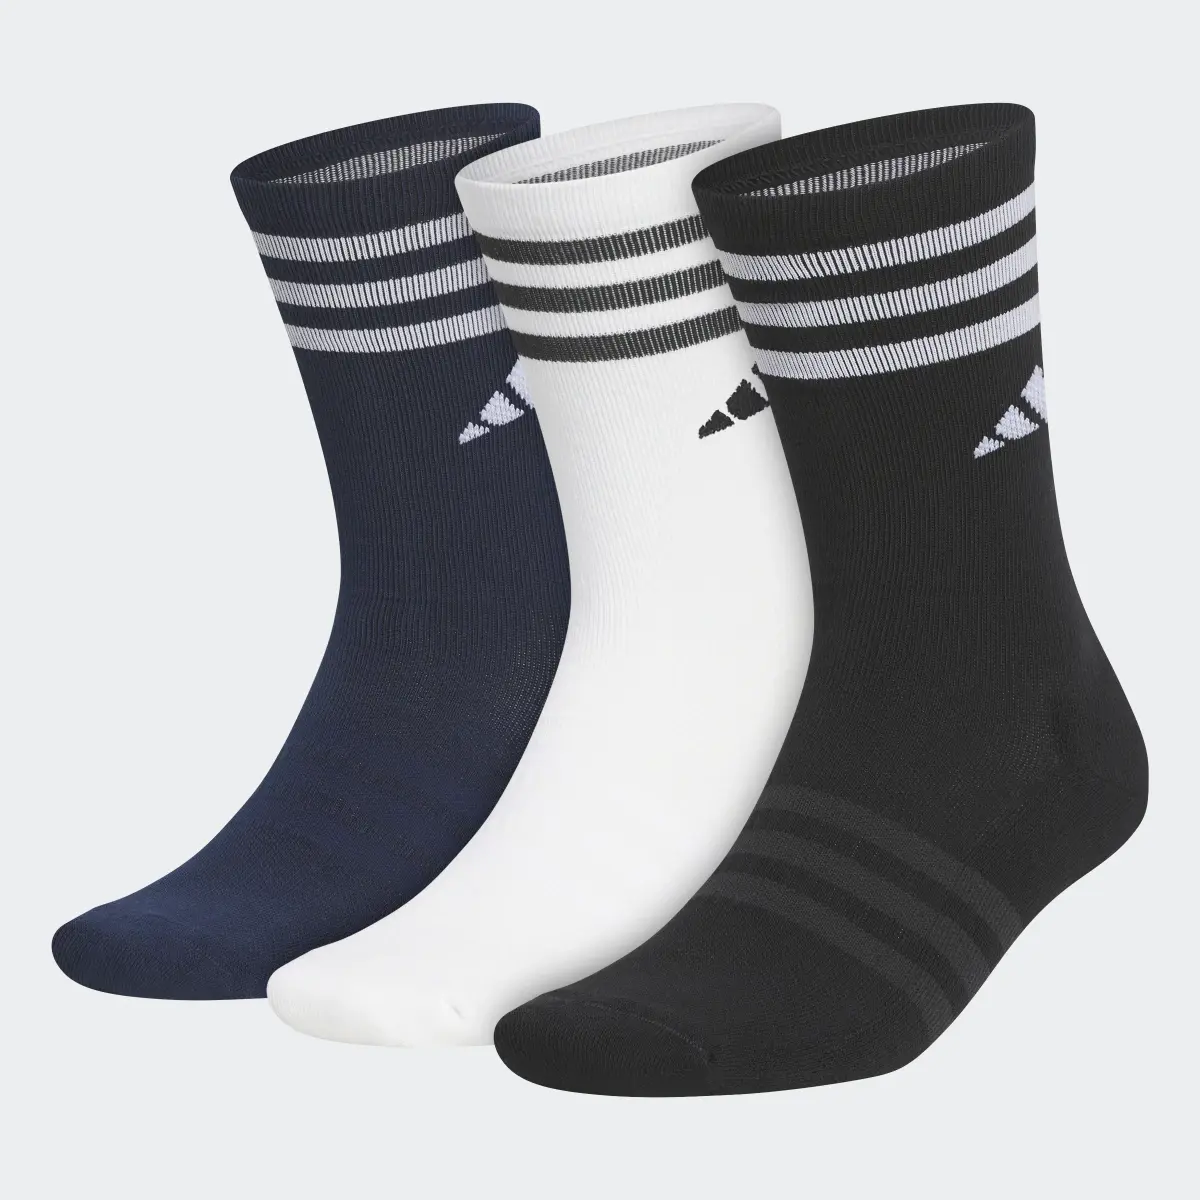 Adidas Crew Socks 3 Pairs. 2